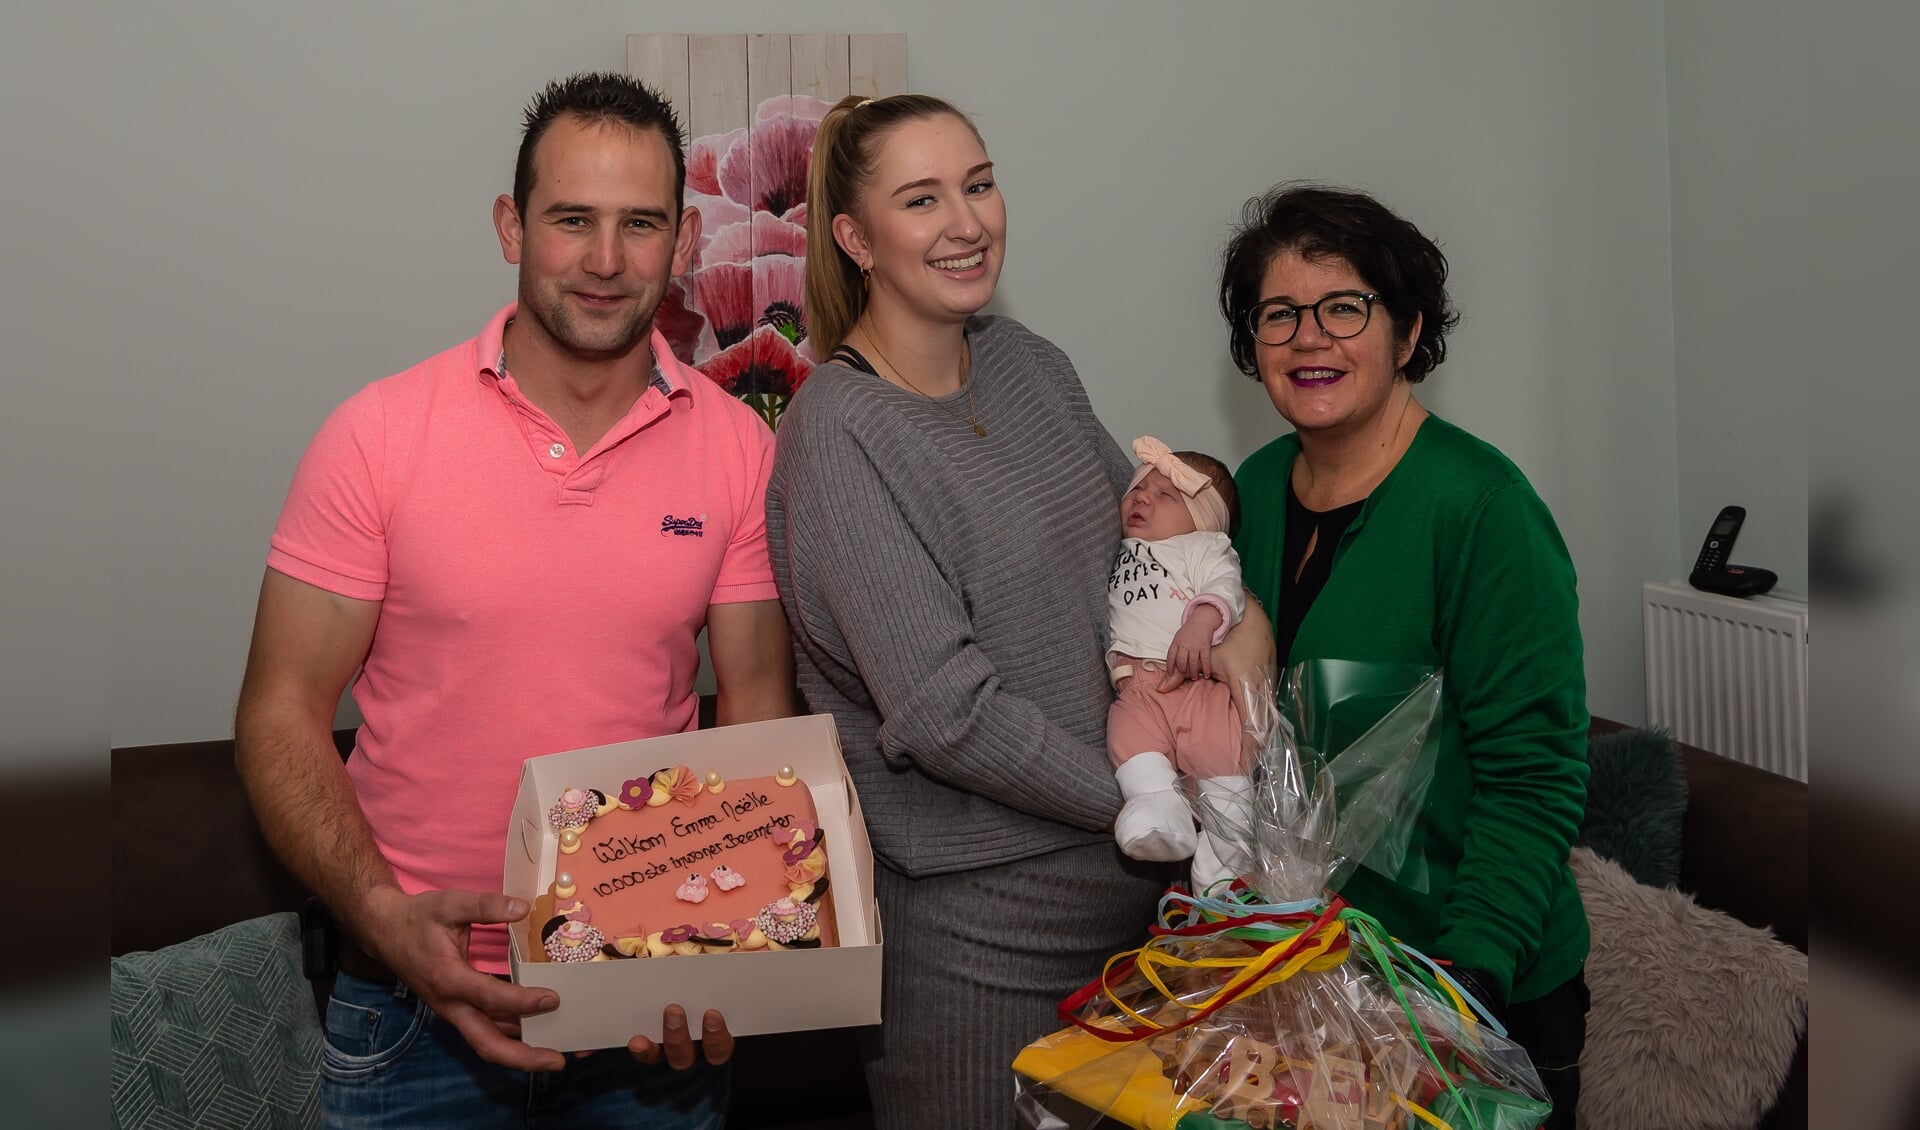 De kersverse Beemsterlinge omringd door haar ouders Arjan en Noëlle en burgemeester Joyce van Beek